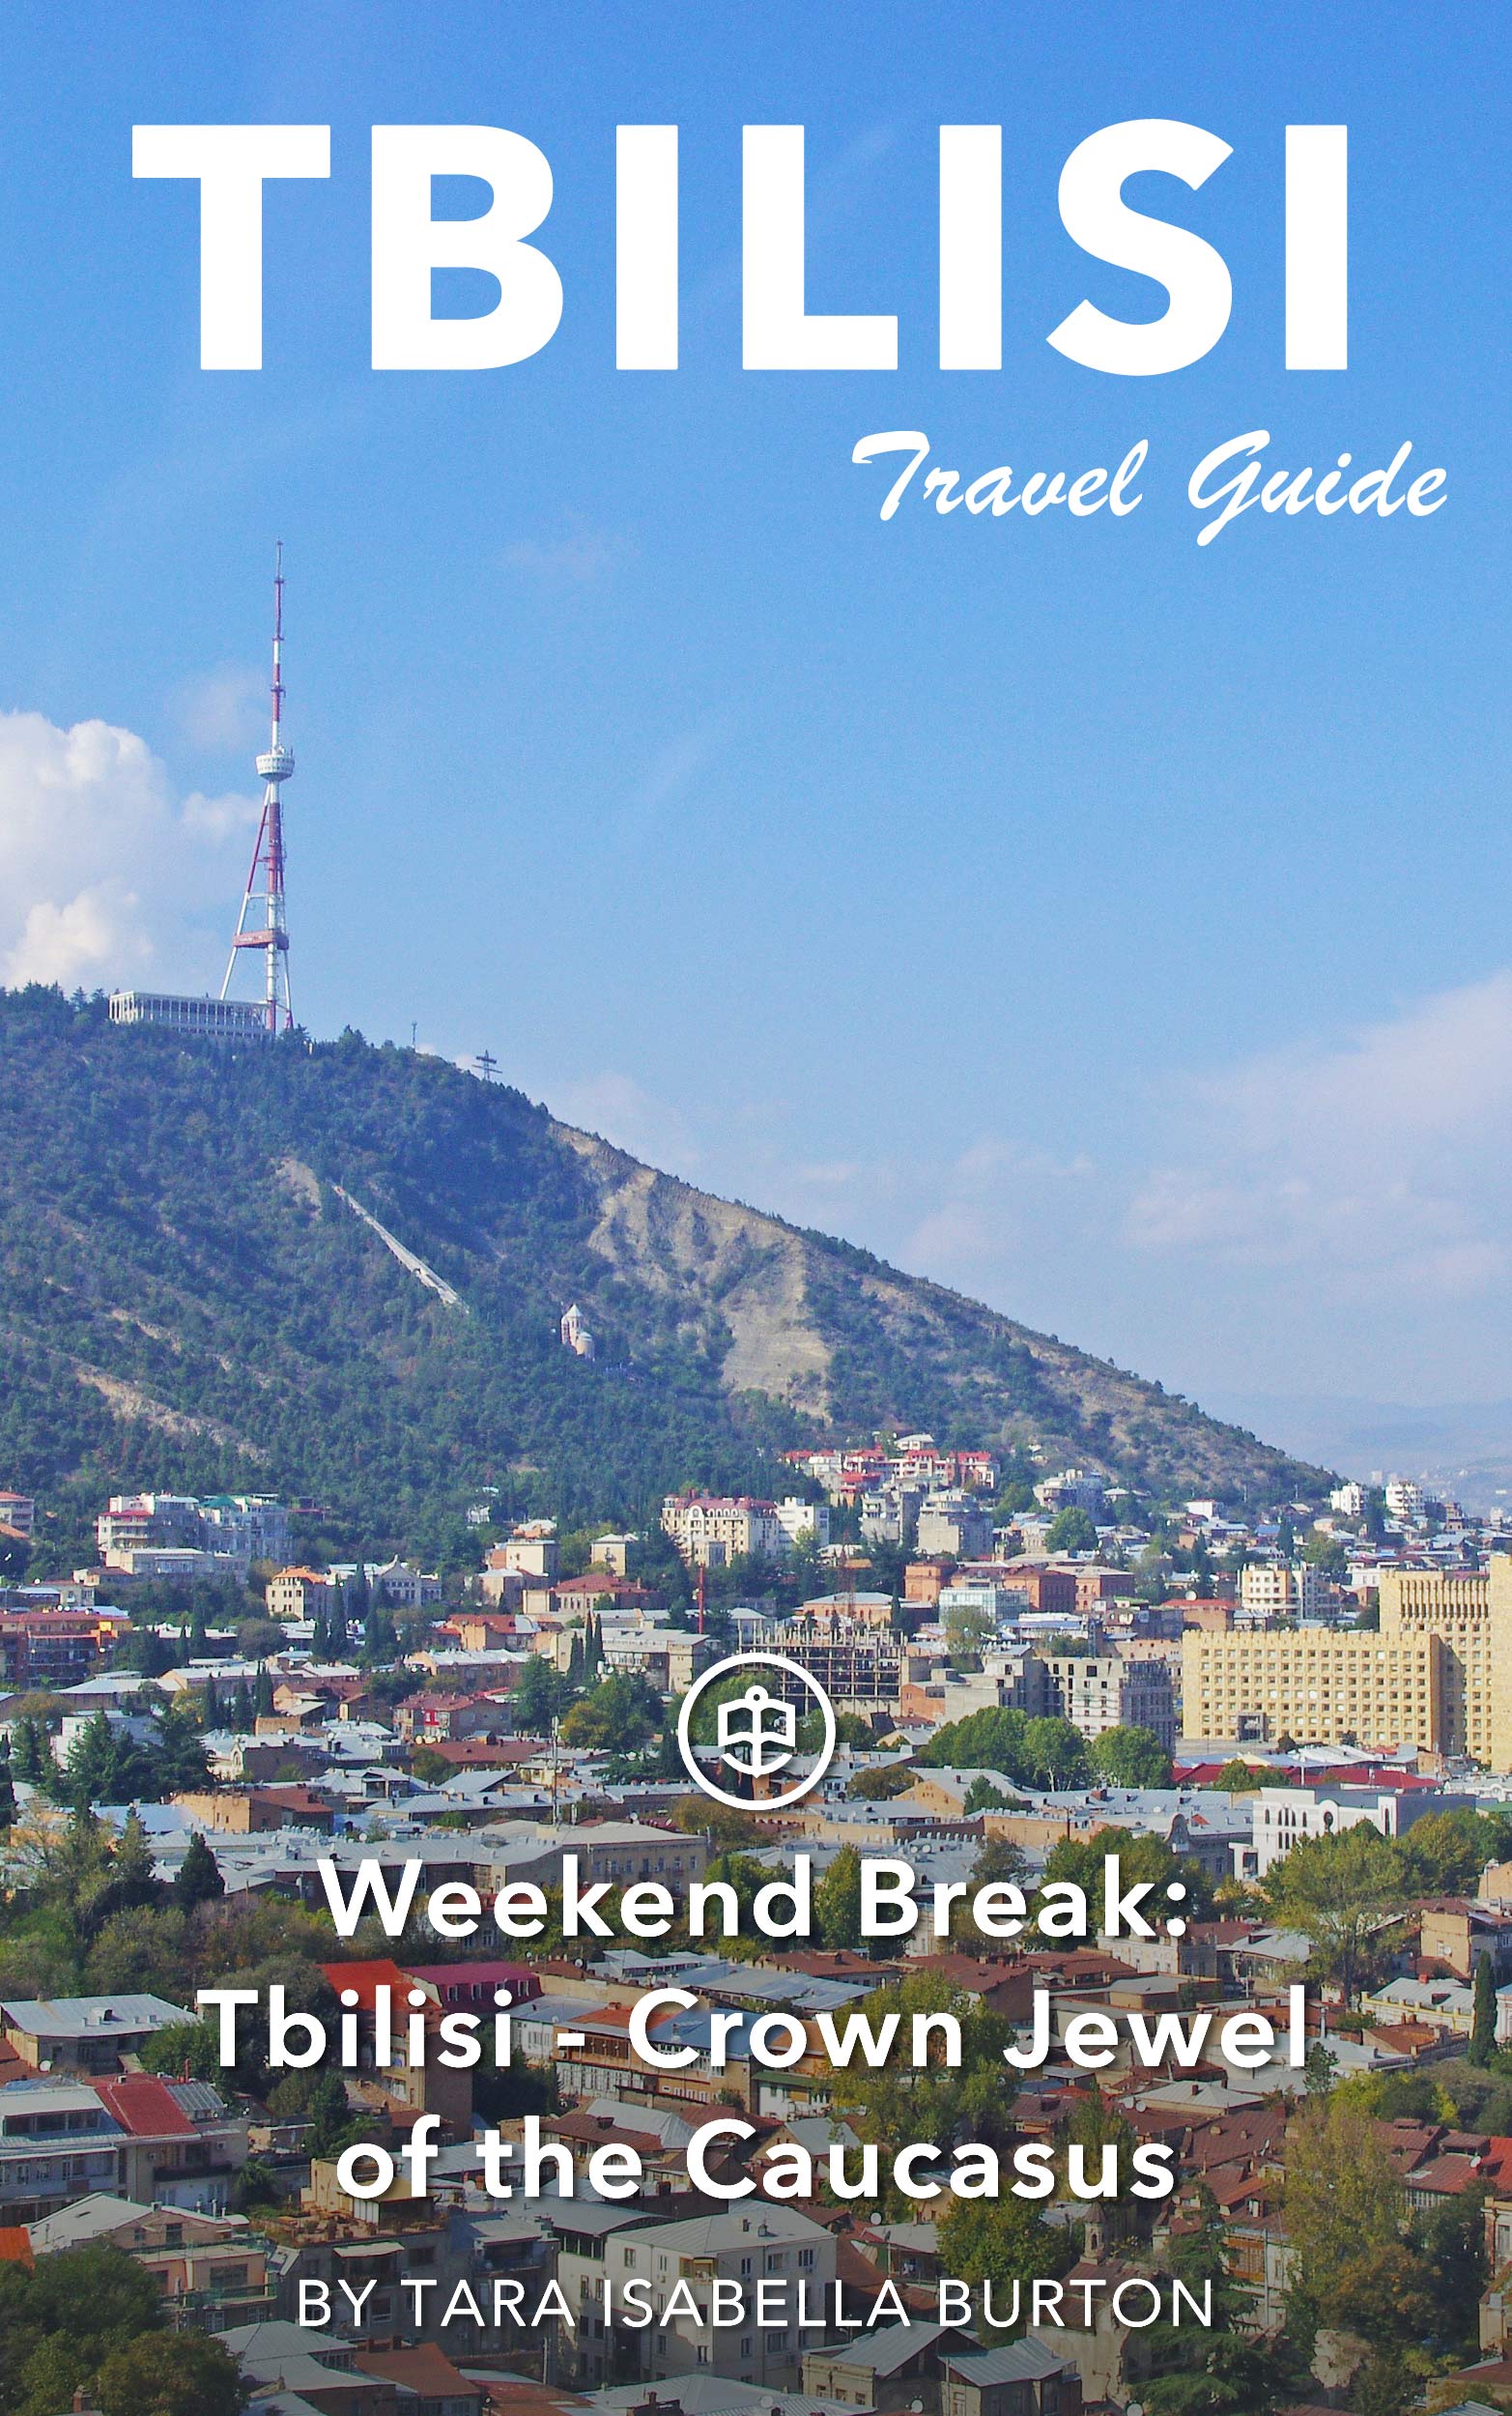 Weekend Break: Tbilisi - Crown Jewel of the Caucasus